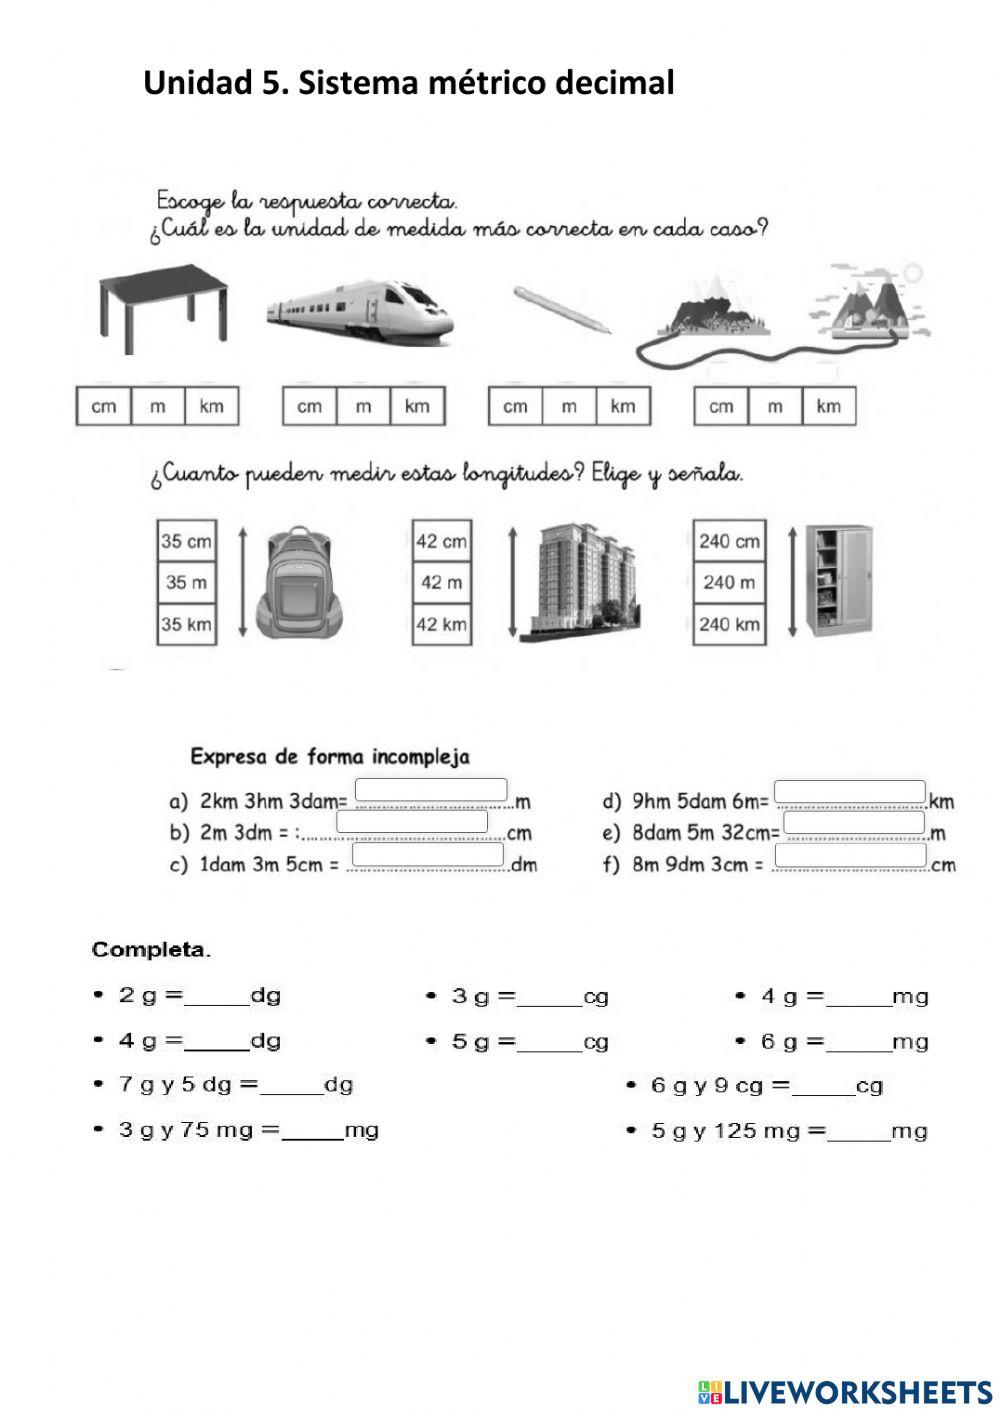 Ejercicios SMD (Sistema métrico decimal)